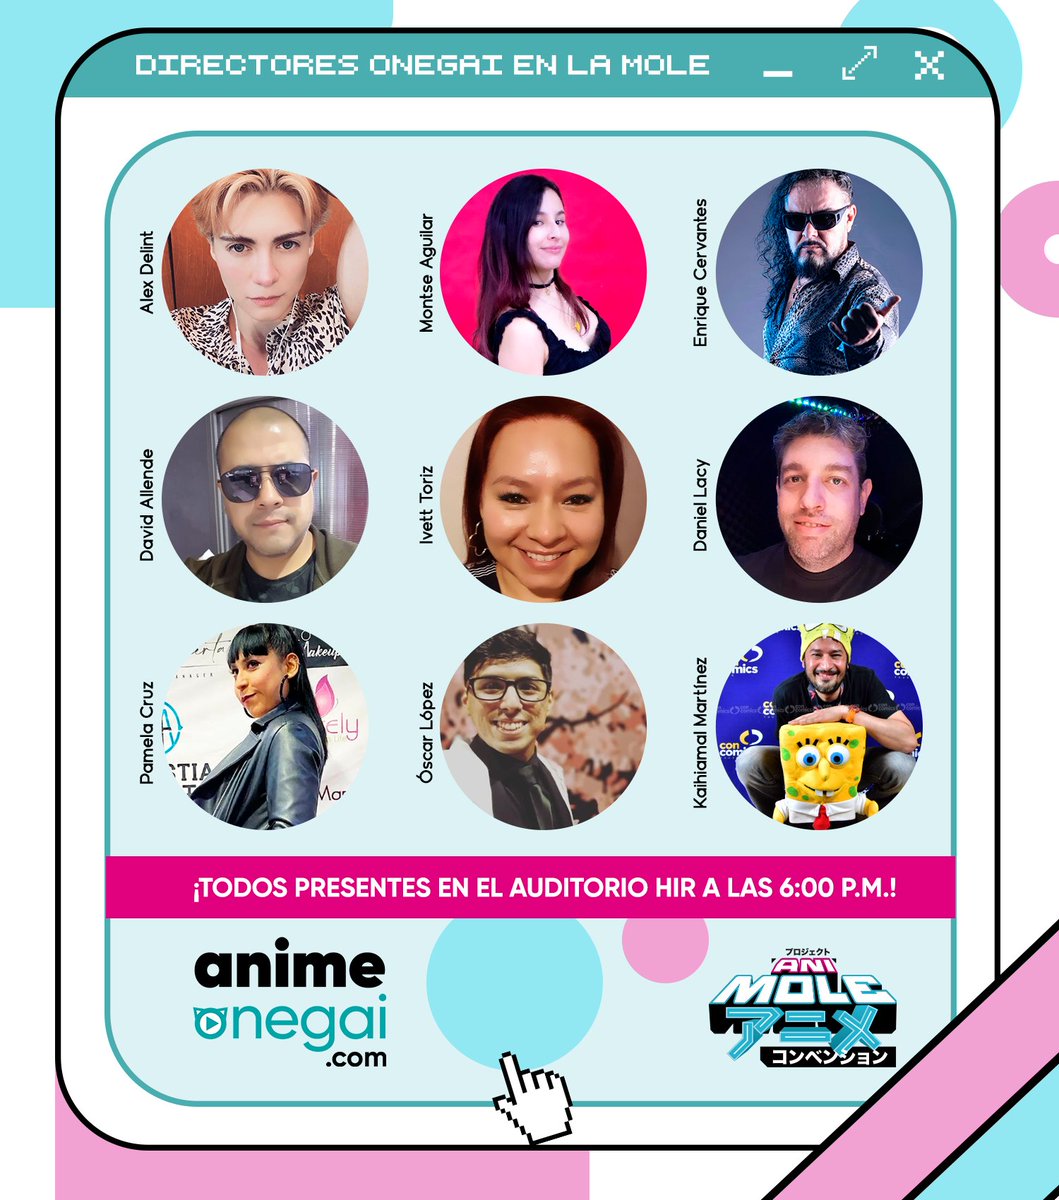 ¡Este Domingo 1° Octubre tienen una cita en @lamolemx ! 
Nuestros Directores de Doblaje nos estarán acompañando en el escenario HIR a las 6:00 p.m. para hacer ANUNCIOS EXCLUSIVOS.
animeonegai.com
#DoblajeLatino #Anime #LaMoleConvention #AniMole